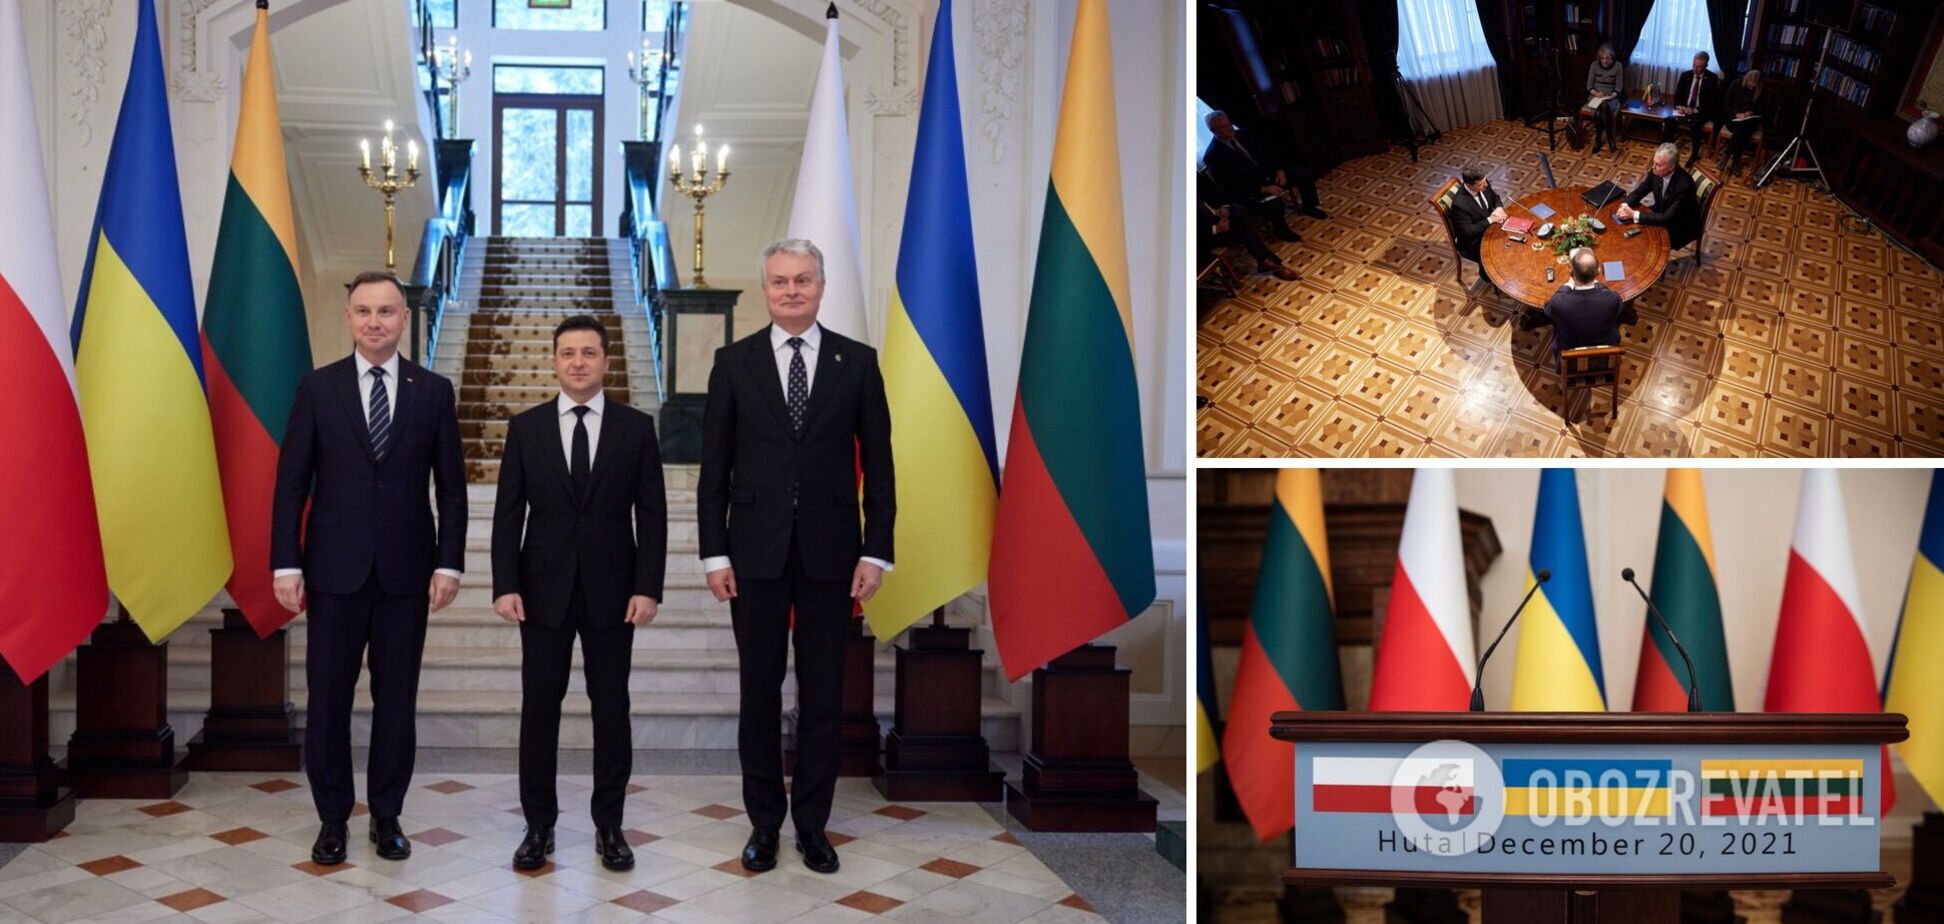 Зеленский провел встречу с лидерами Литвы и Польши